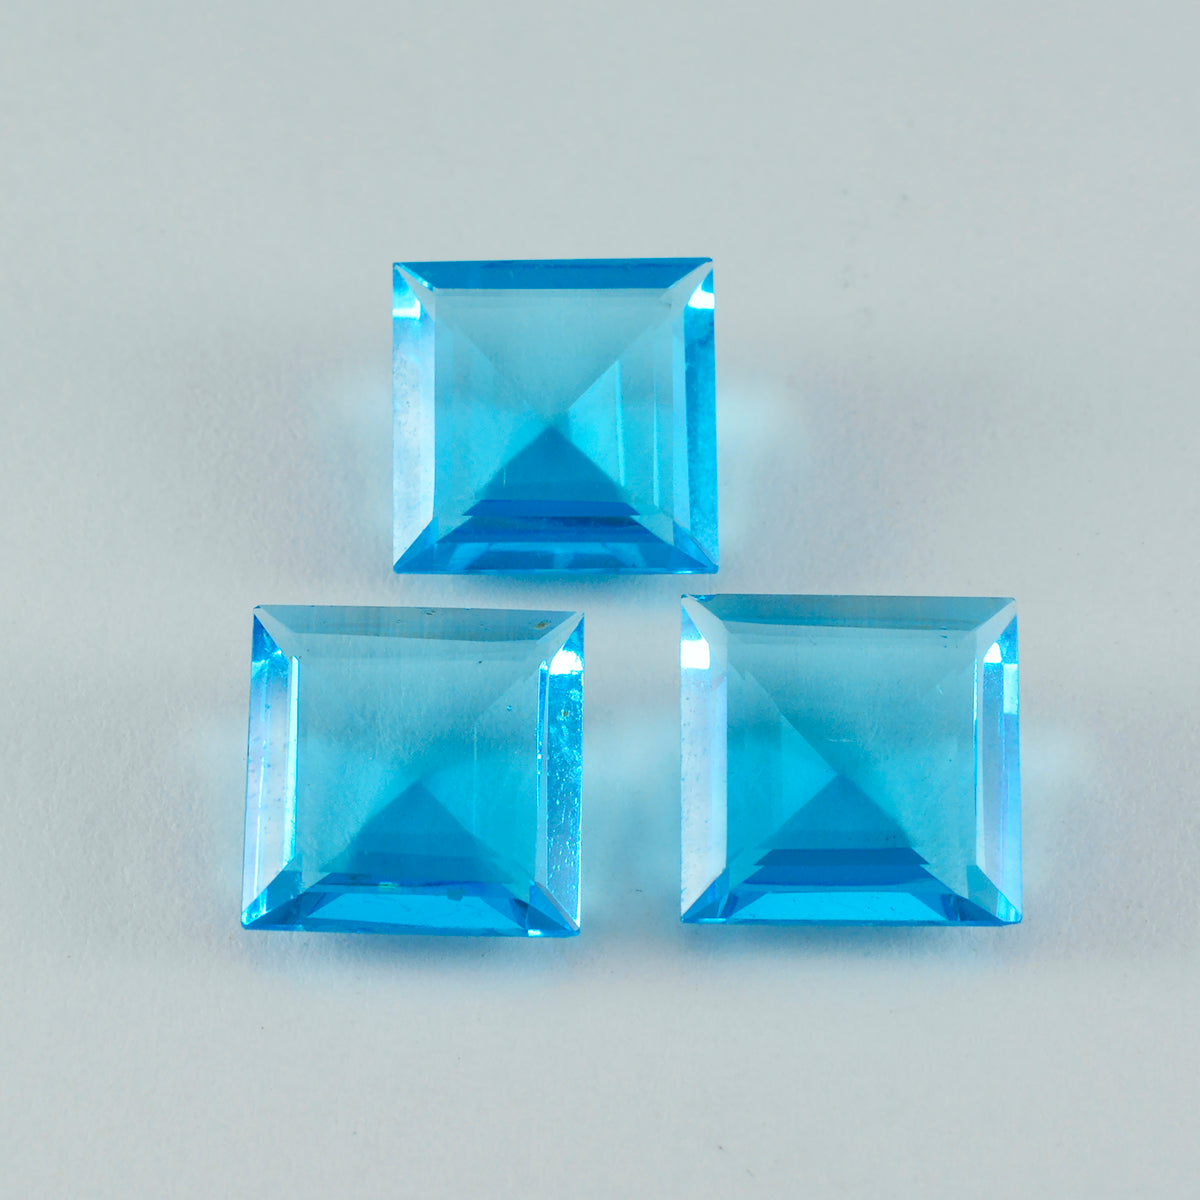 Riyogems 1 pieza Topacio Azul CZ facetado 15x15mm forma cuadrada piedra de calidad bonita